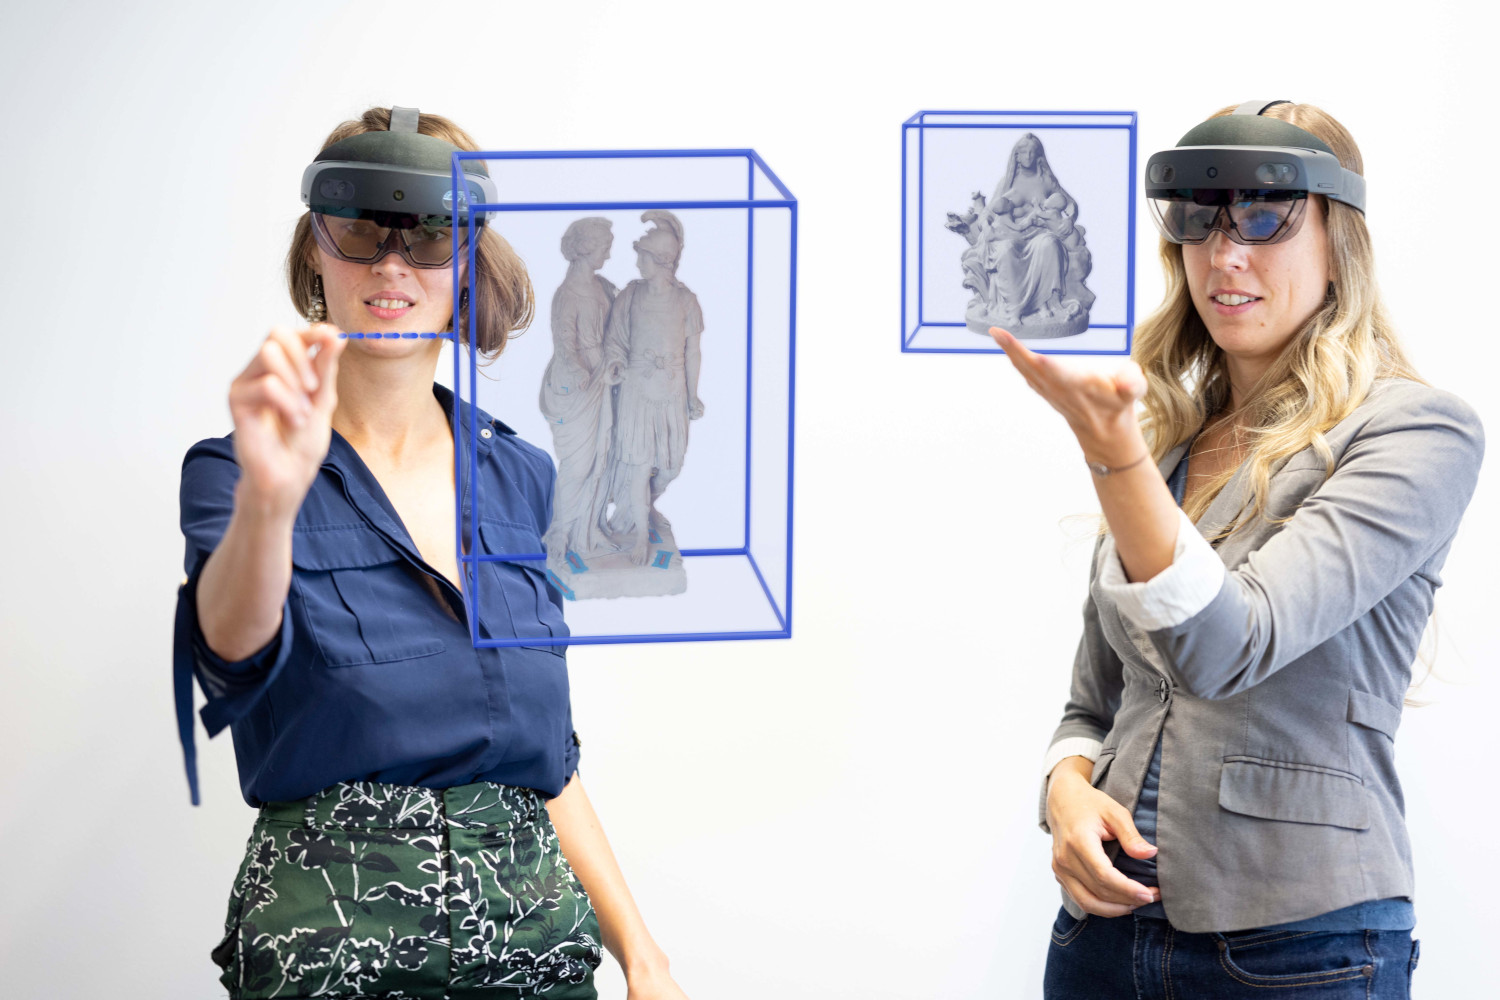 Zwei Frauen mit Hololens-Brillen sind zu sehen sowie Visualisierungen, was sie in der Extended Reality sehen.